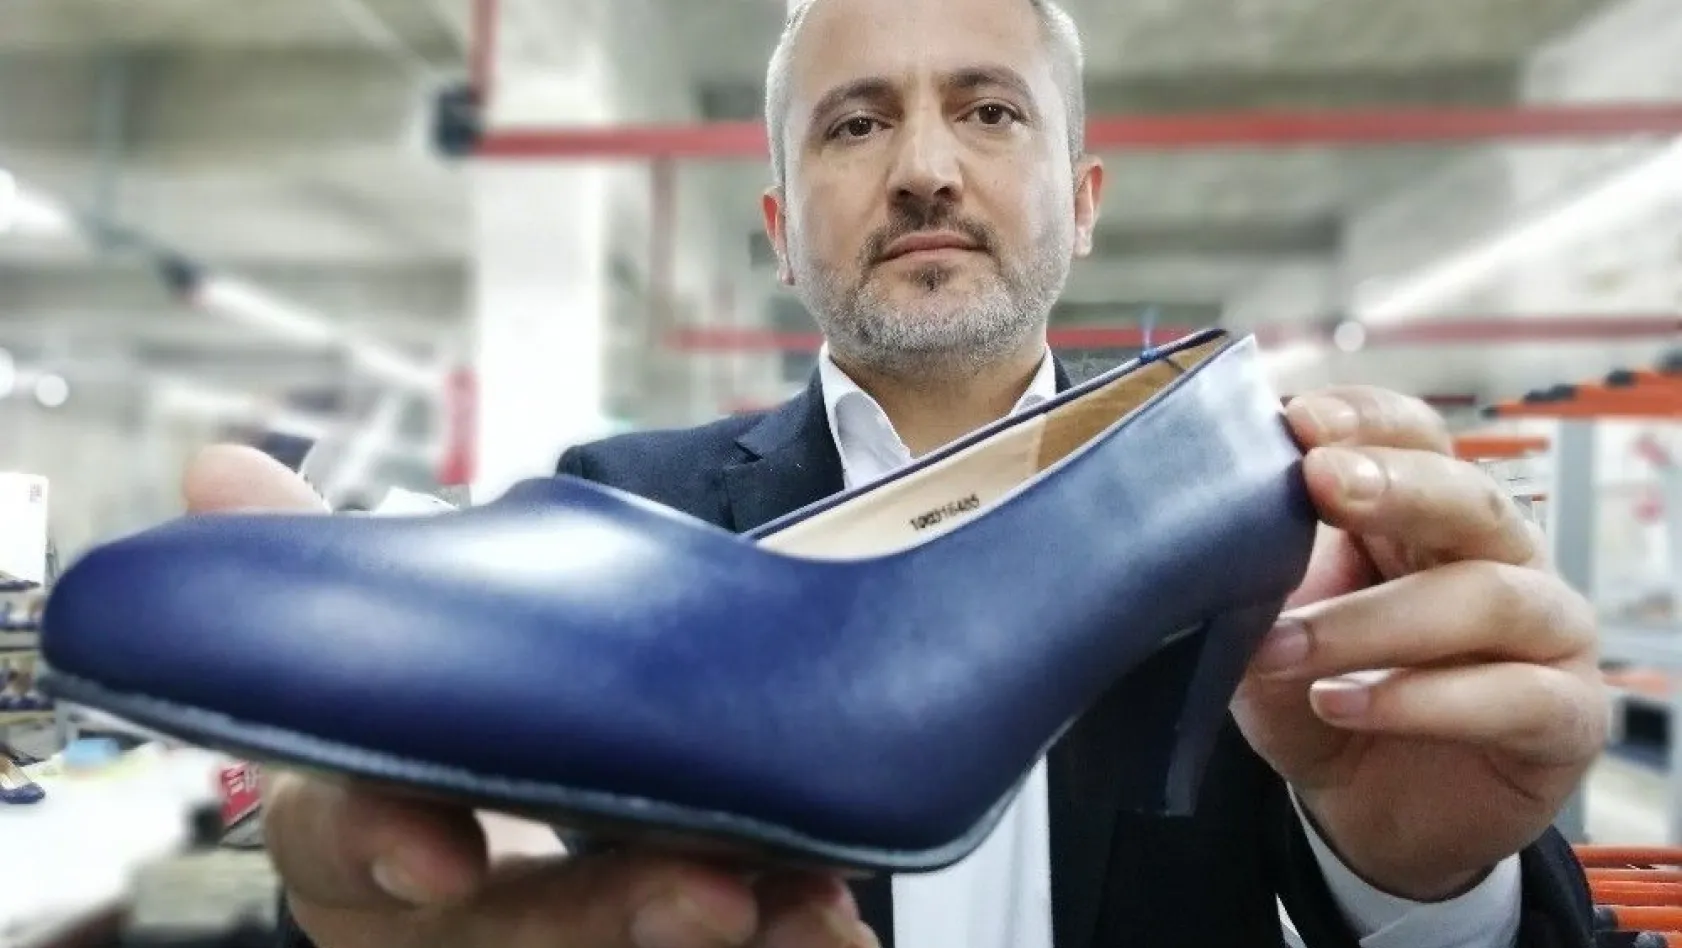 Kahramanmaraş'ta günde 25 bin çift kadın ayakkabısı üretiliyor
